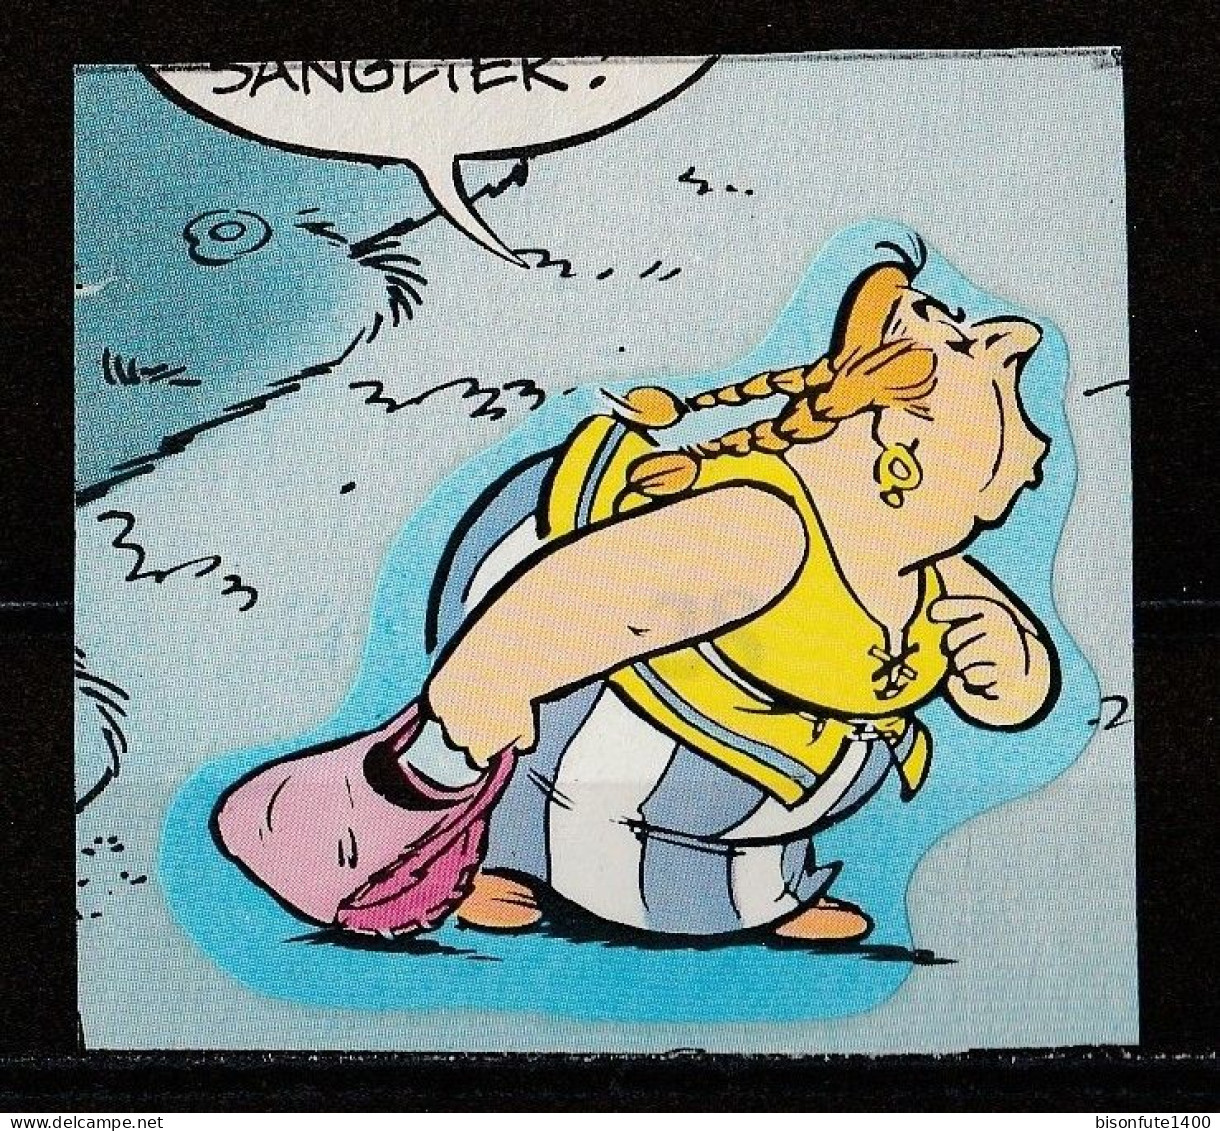 ASTERIX : Occasion : Vignette Autocollante N° 28 De L'album PANINI "Astérix" De 1987. ( Voir Description ) - French Edition